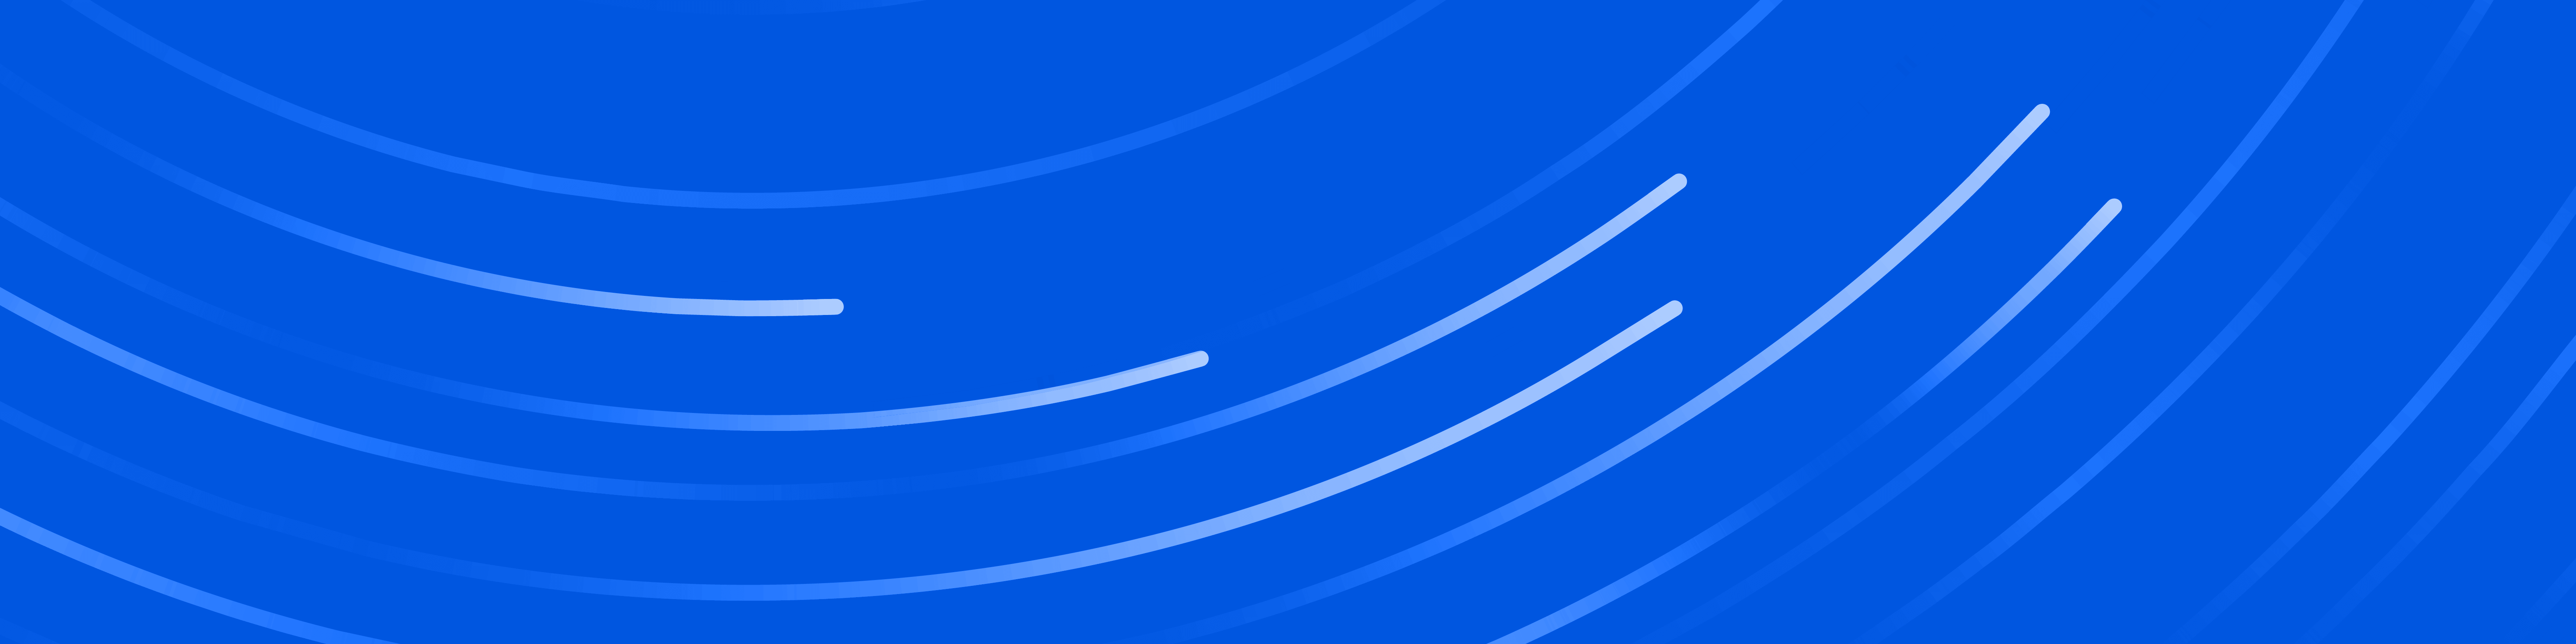 vivaldi blue banner